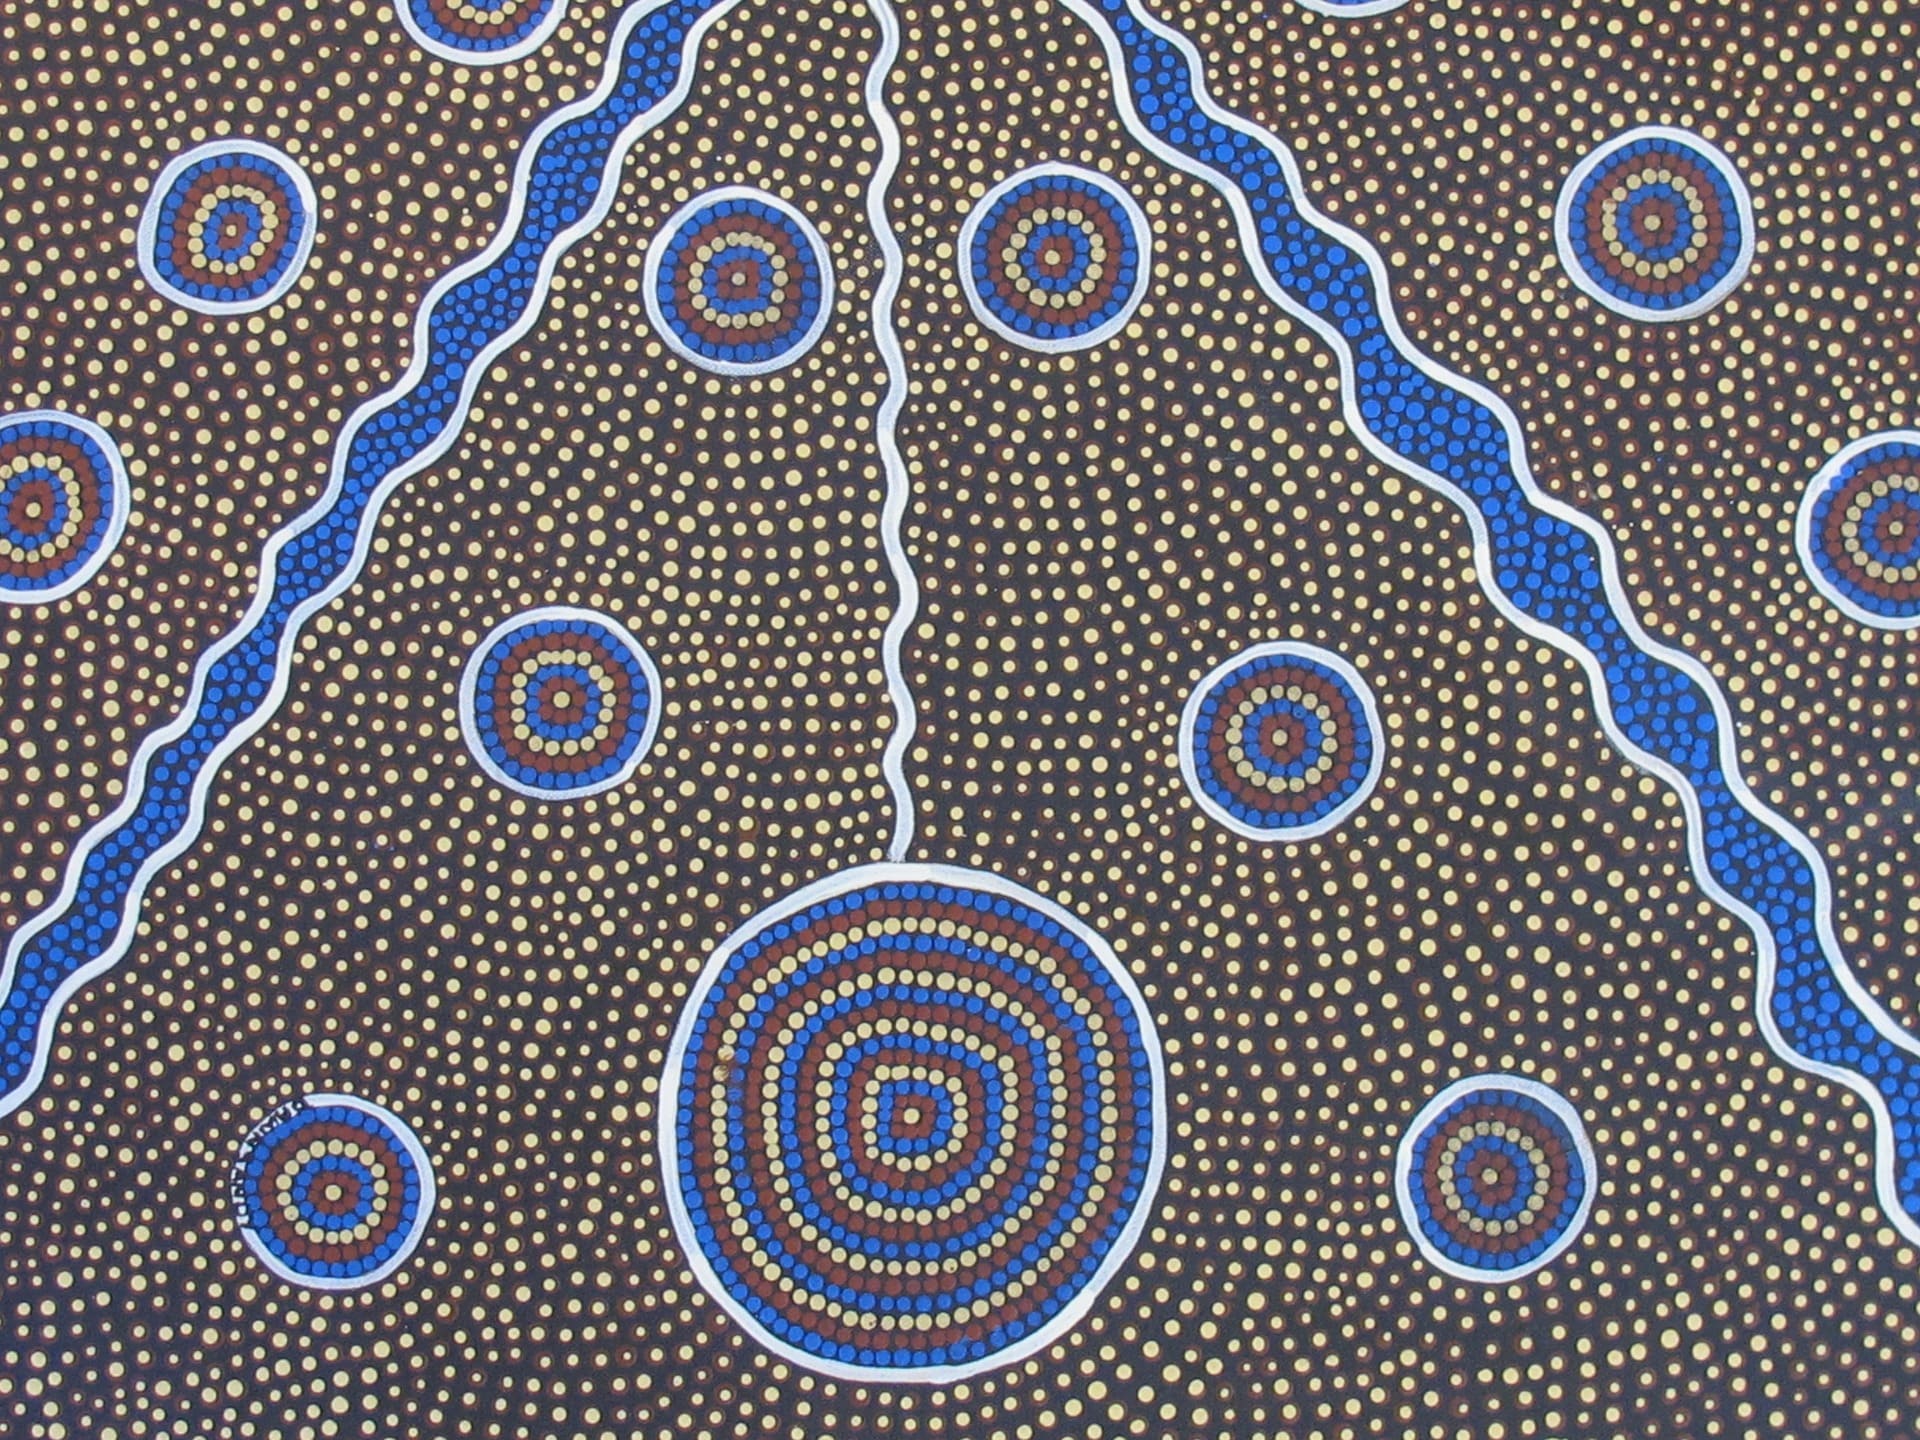 Le dot-painting, une forme de peinture traditionnelle des aborigènes d'Australie